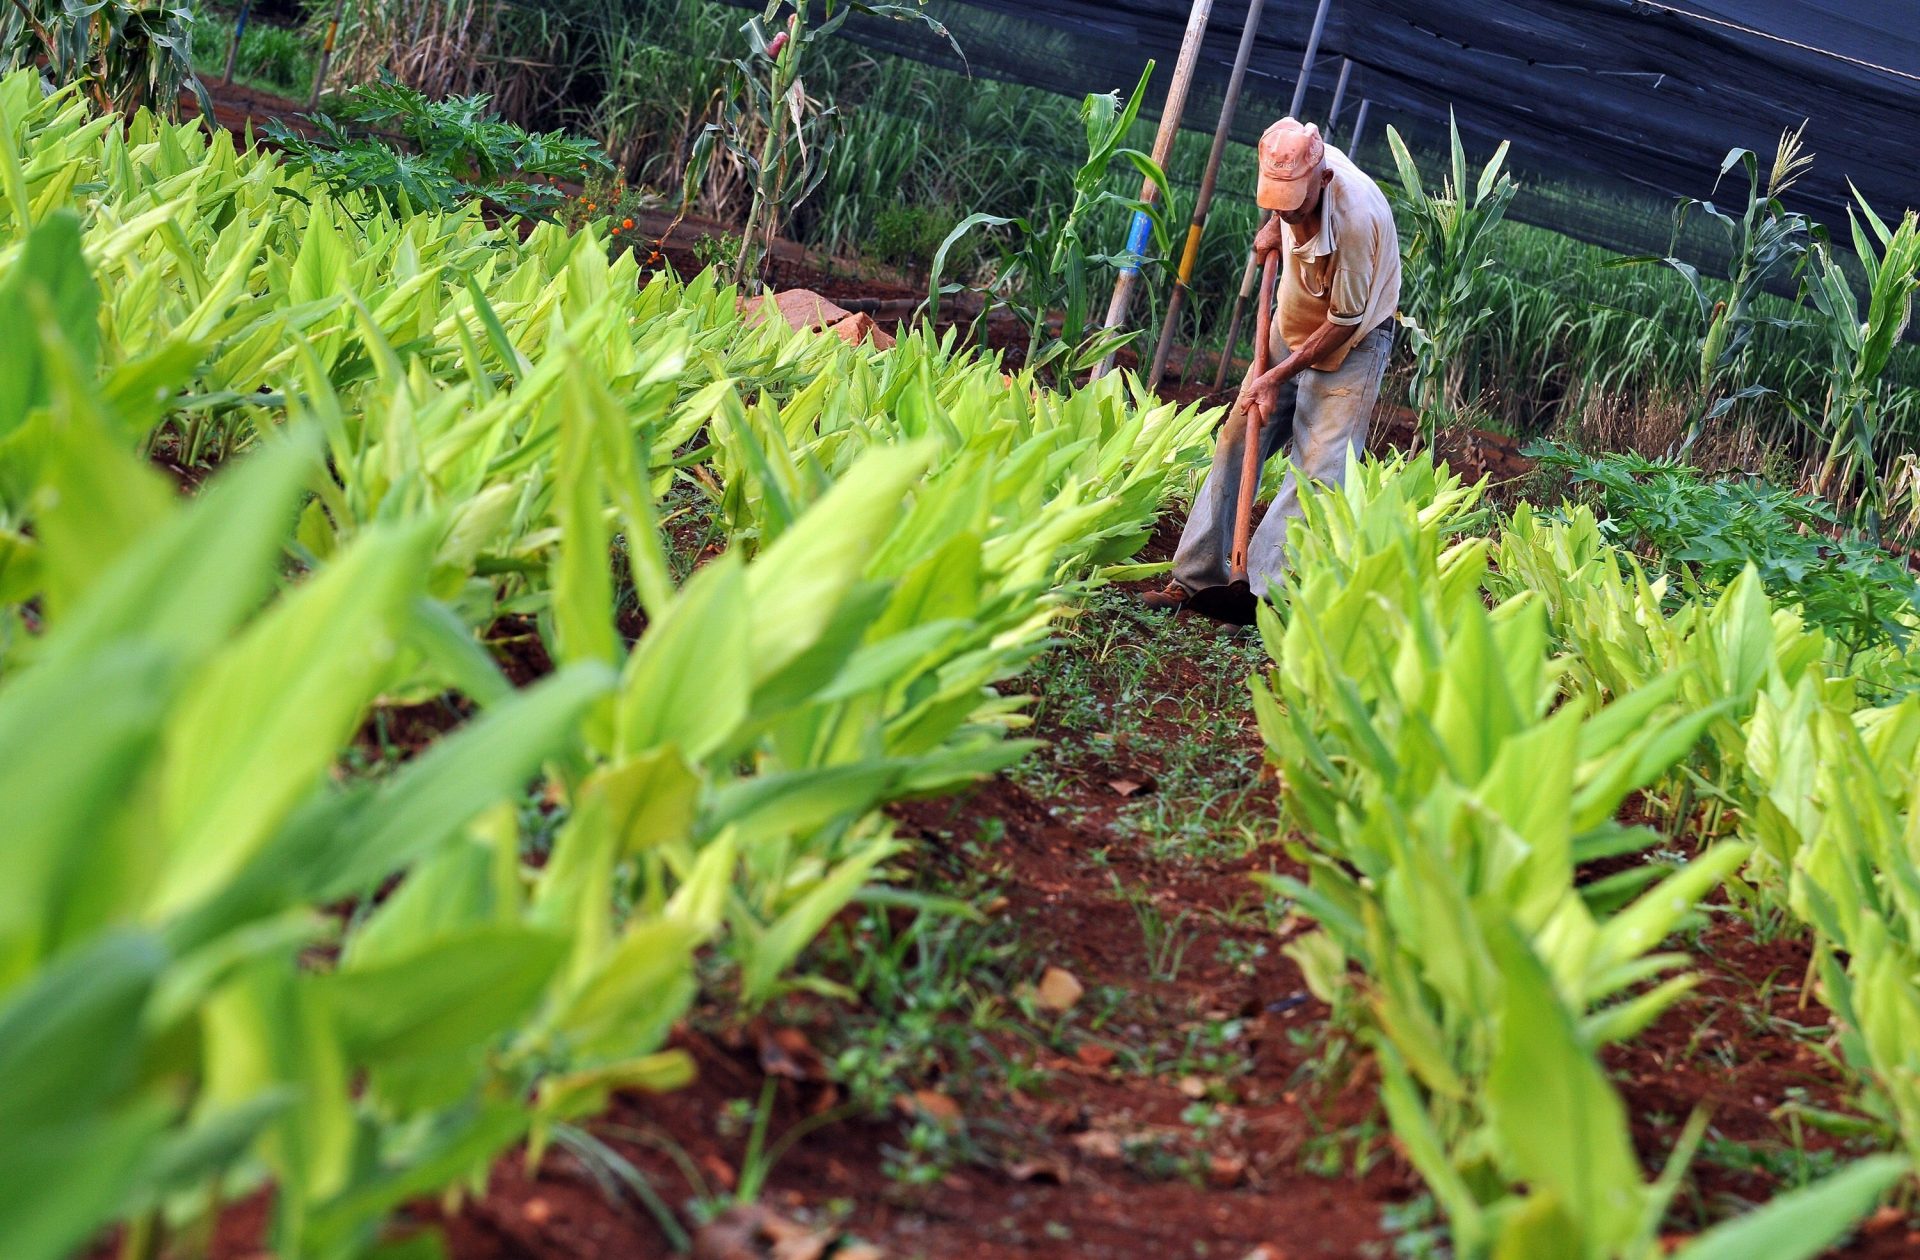 La agroecología, que FAO quiere introducir en agenda política, no es sólo para “reverdecer” la agroindustria